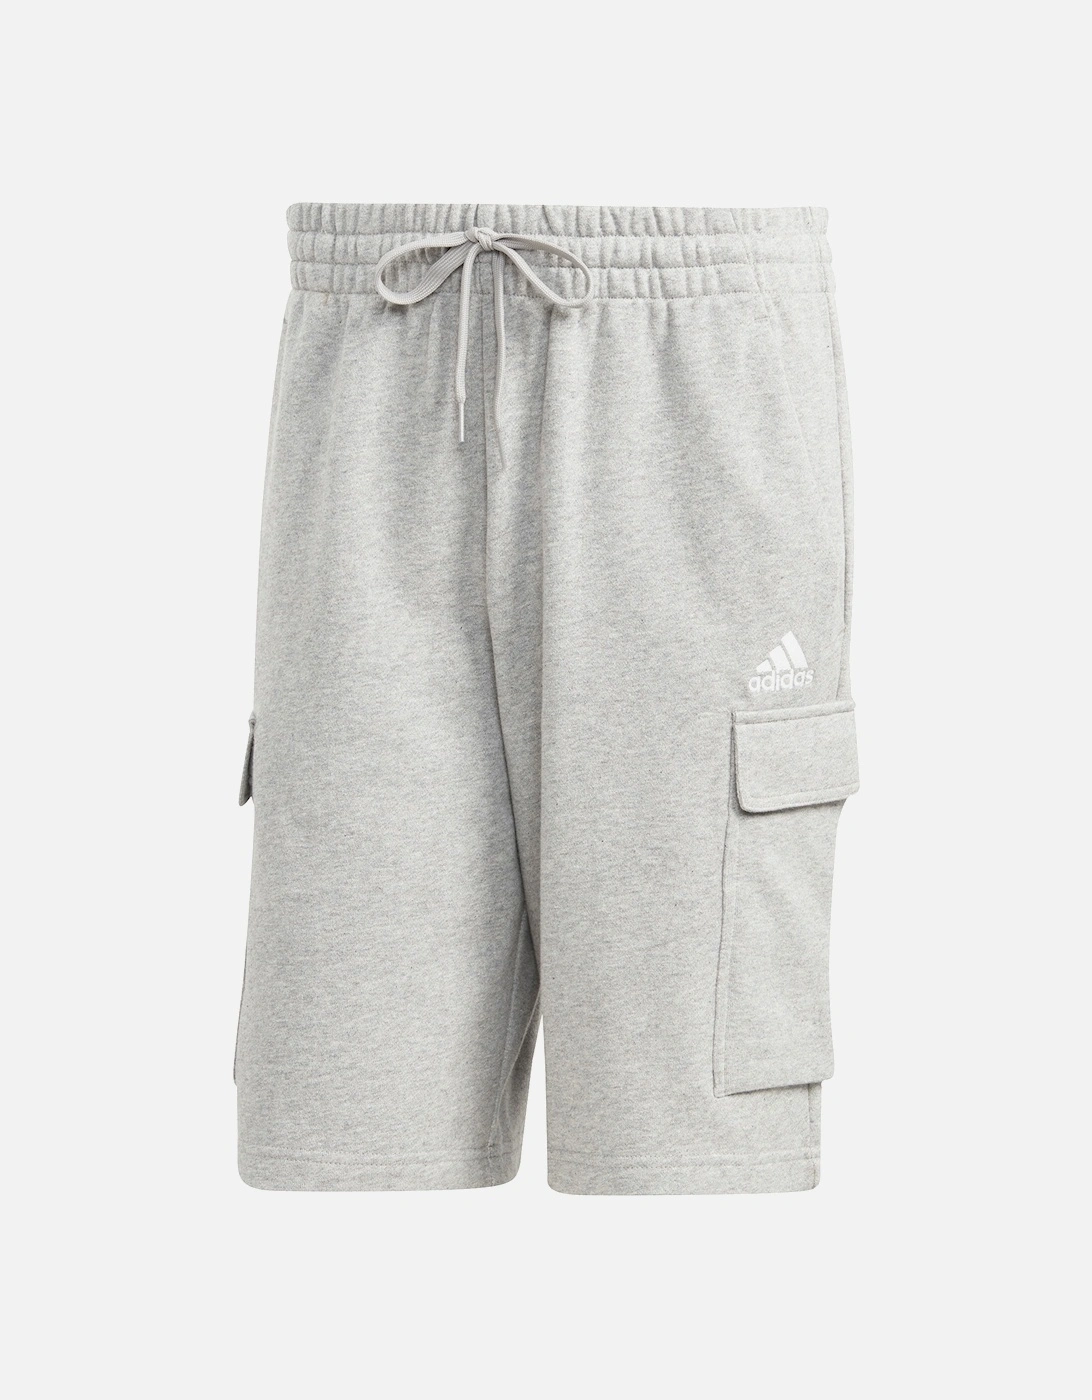 Mens Fleece Cargo Shorts (Grey), 7 of 6